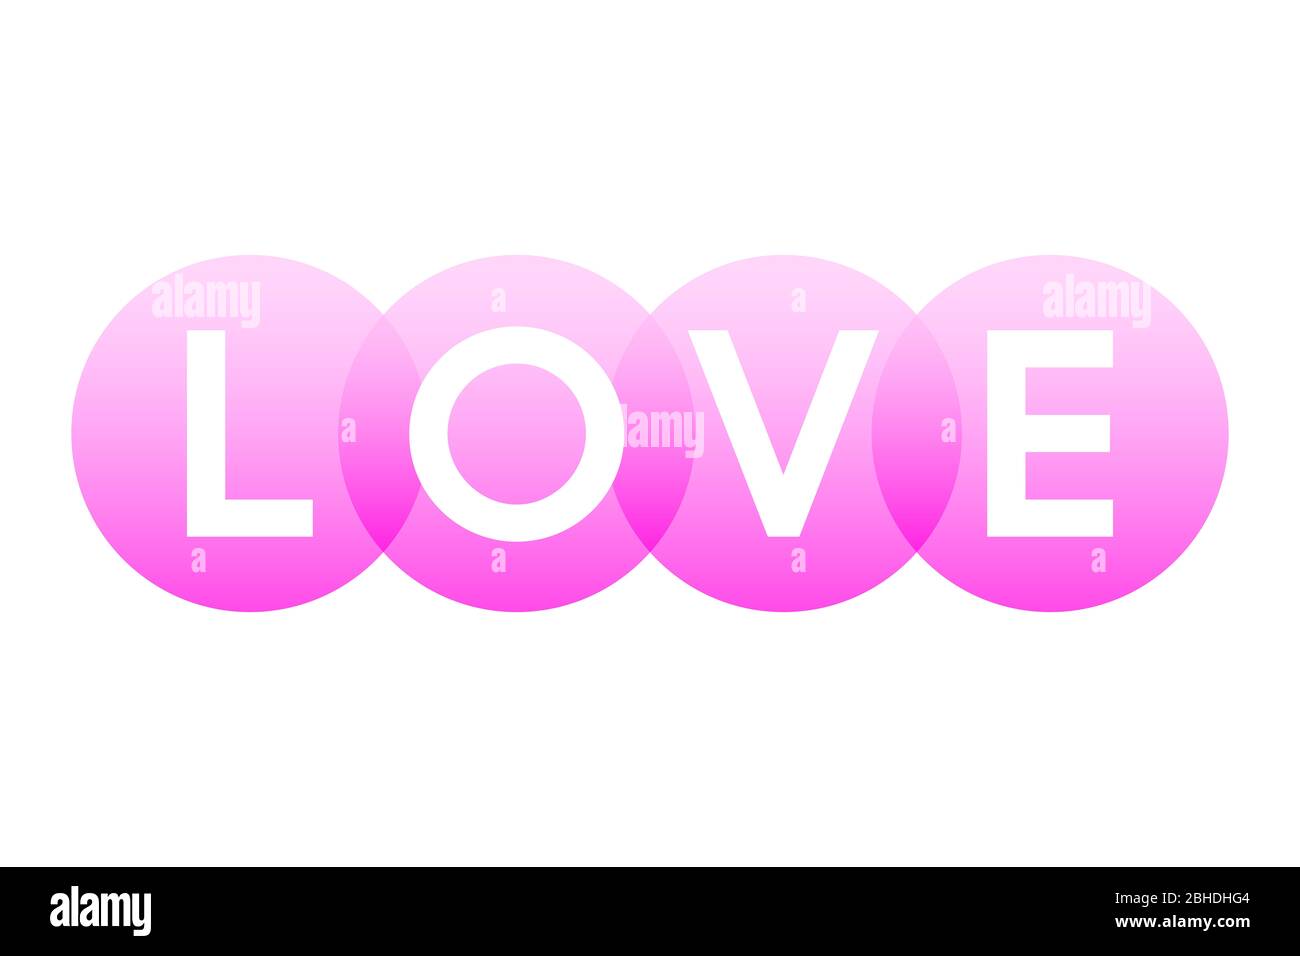 LIEBE, Buchstaben des Wortes in fett weißen Großbuchstaben auf überlappenden durchscheinenden rosa Kreisen dargestellt. Isolierte Abbildung auf weißem Hintergrund. Stockfoto